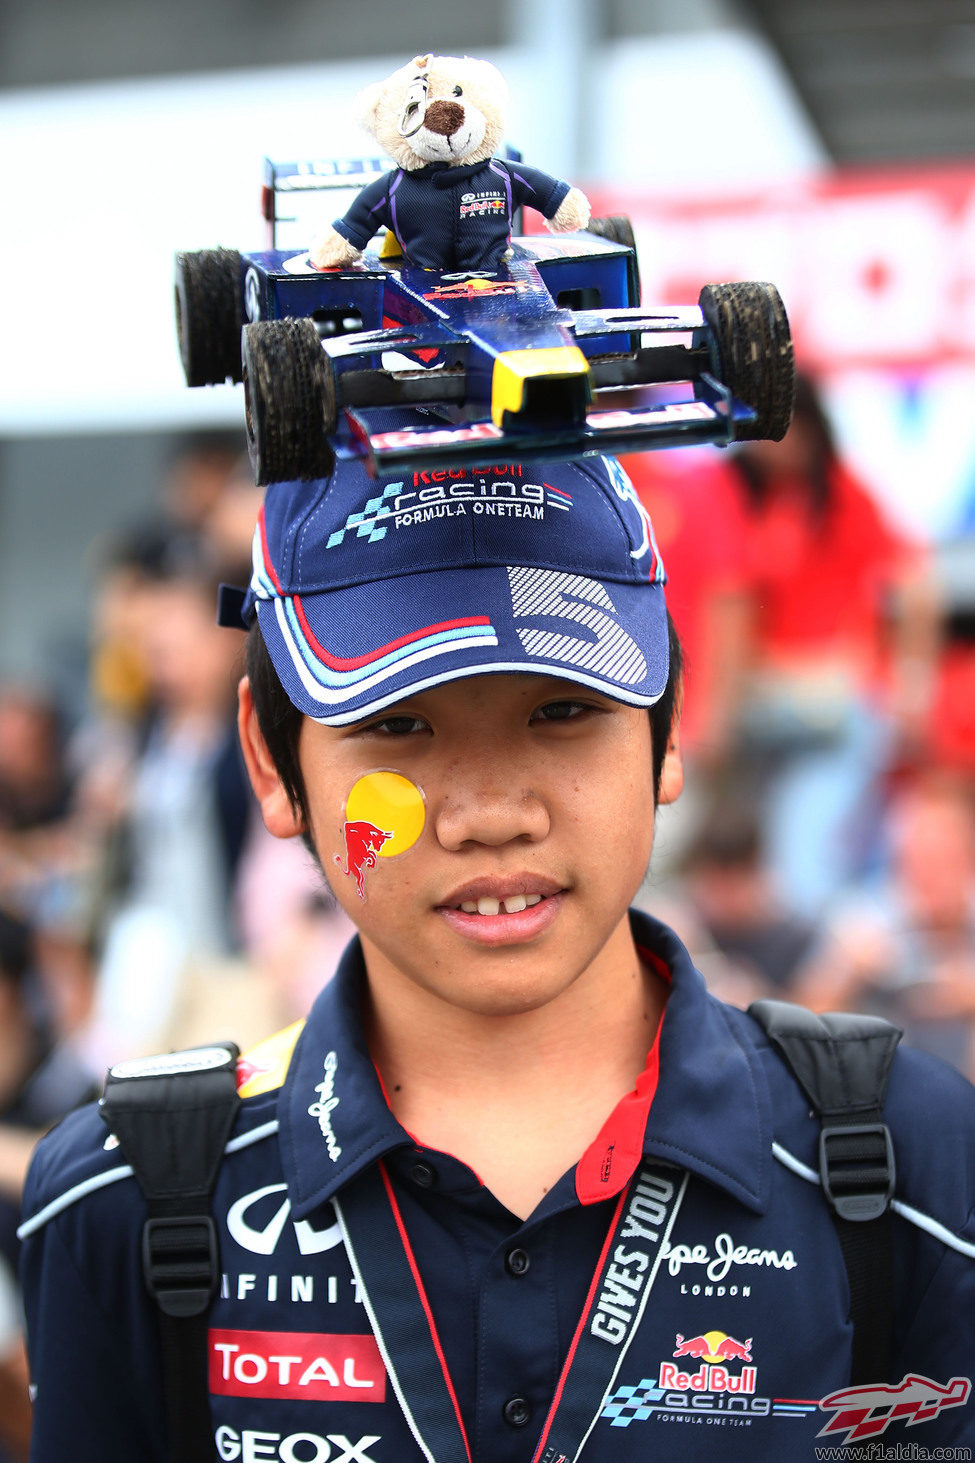 Joven japonés aficionado a Red Bull